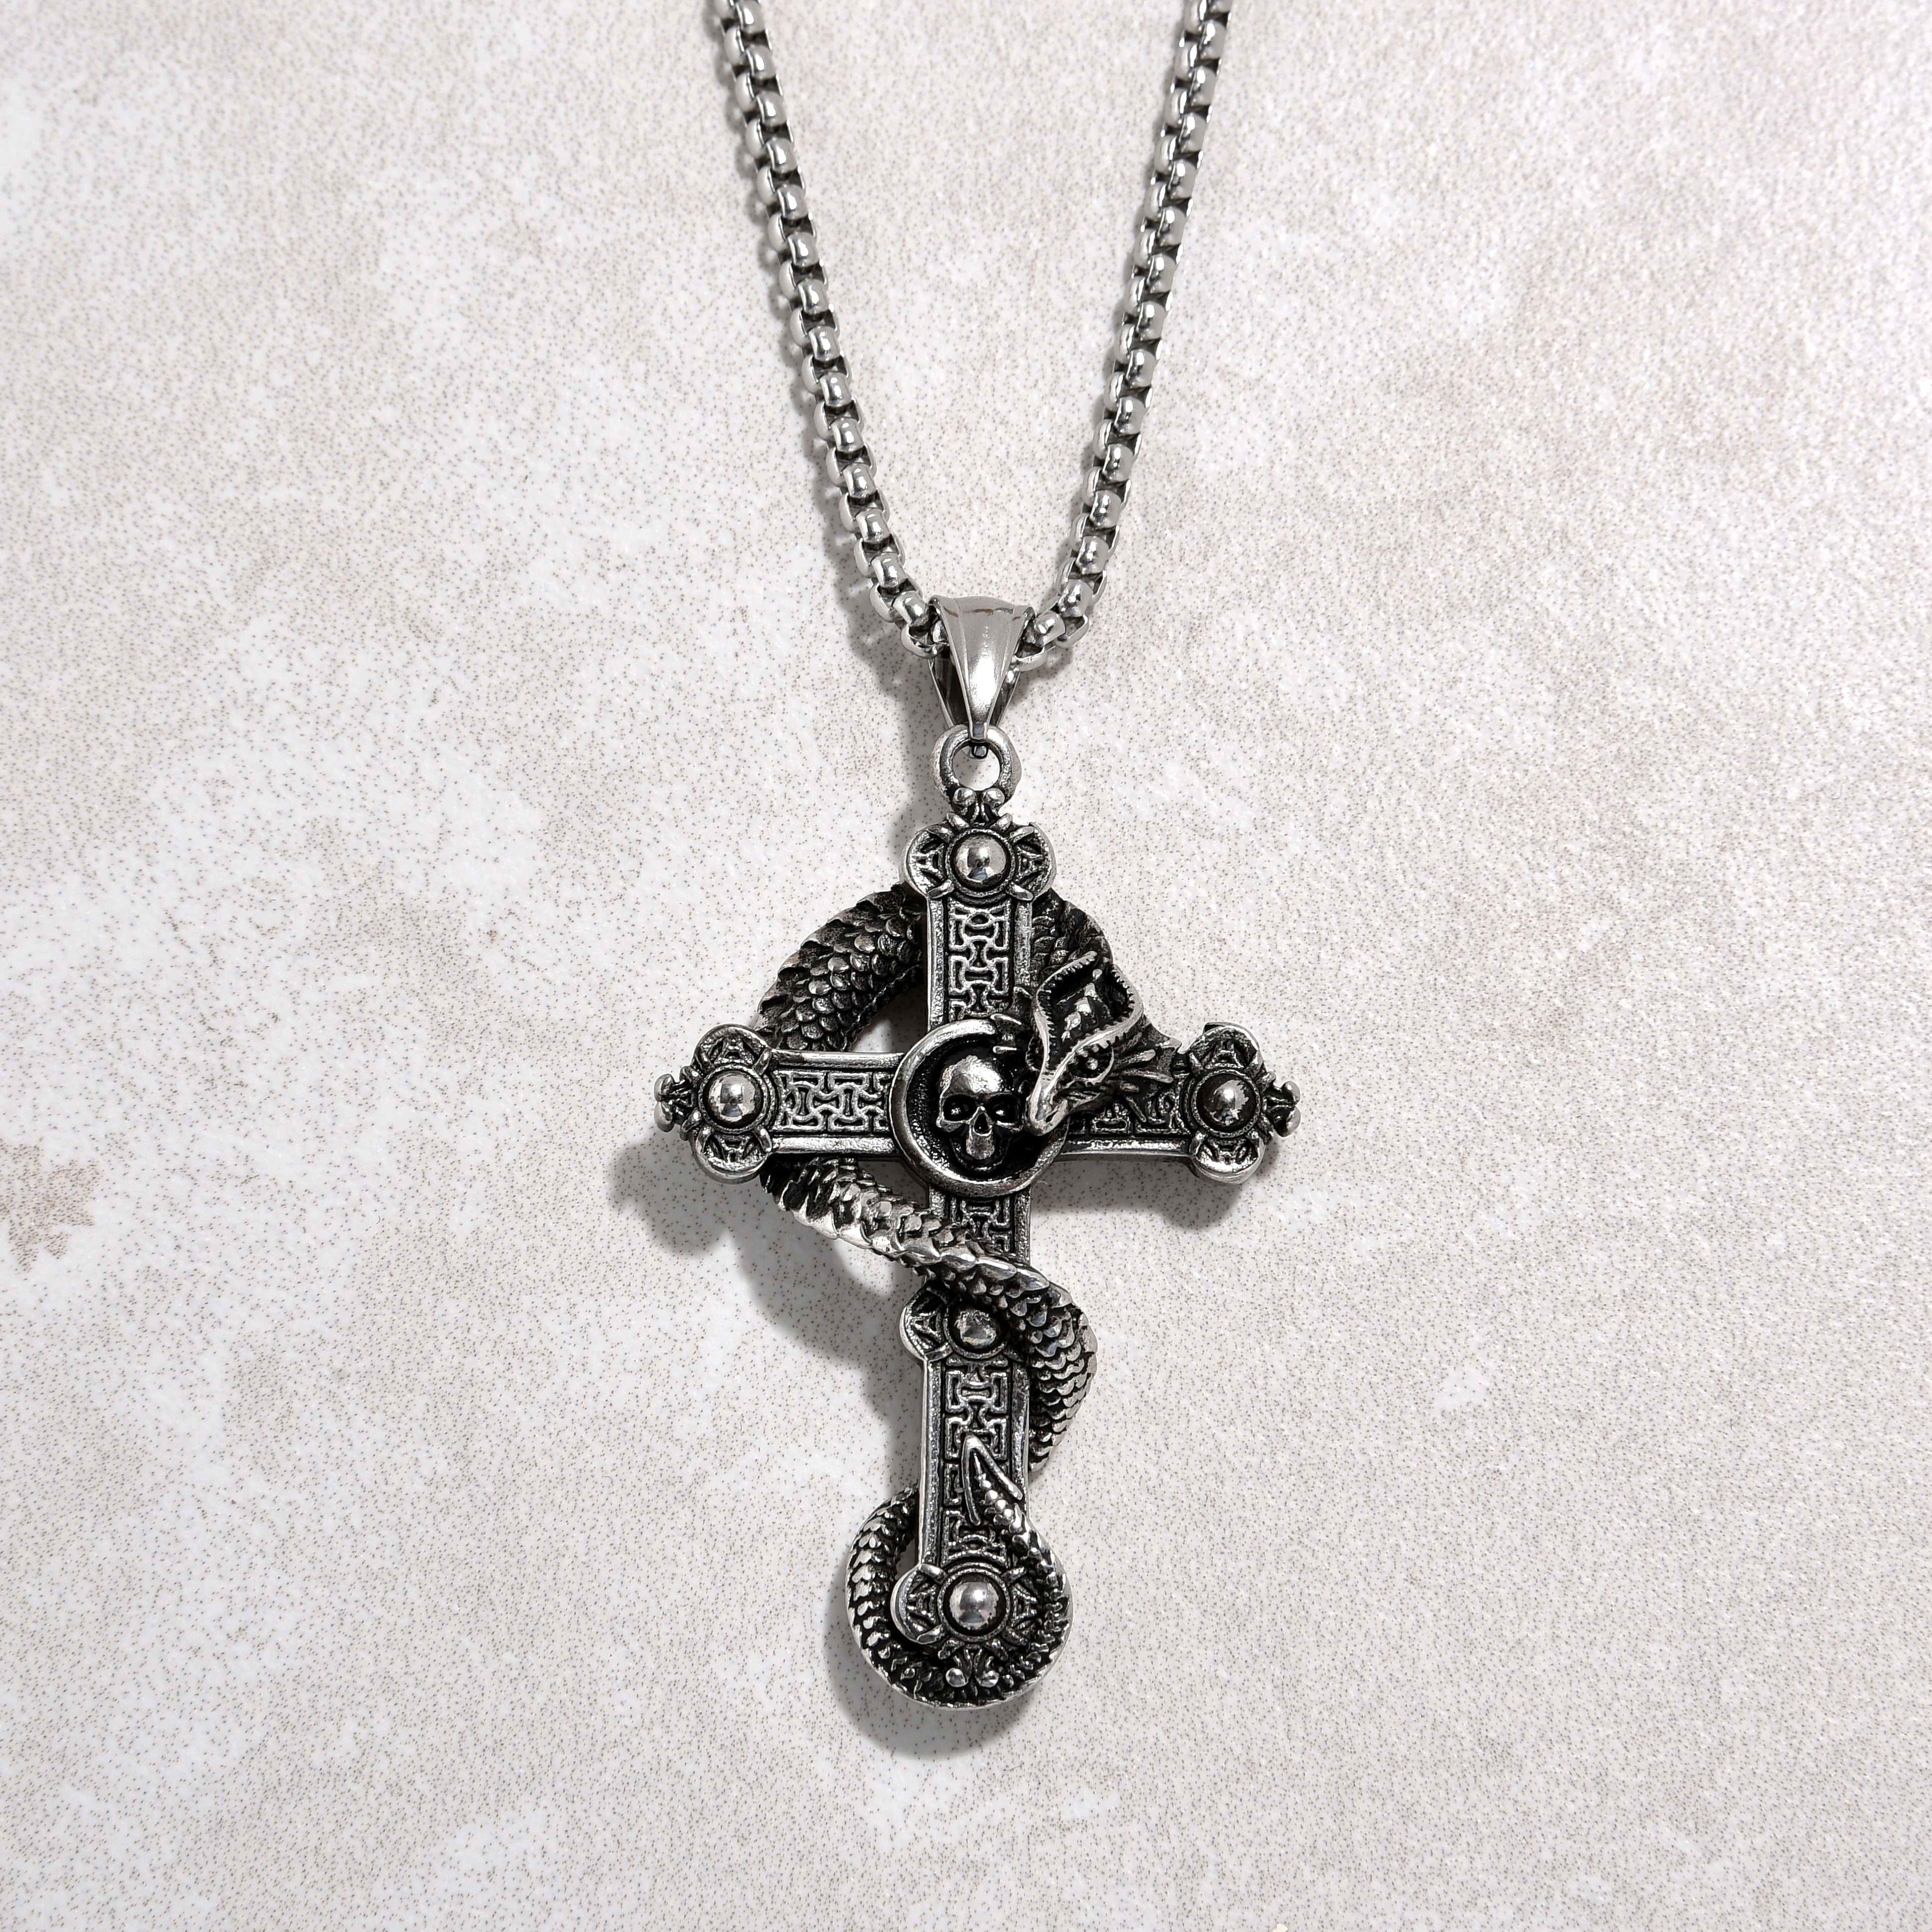 Kalifano Steel Hearts Jewelry Silver Dragon Cross Steel Hearts Necklace SHN515-S